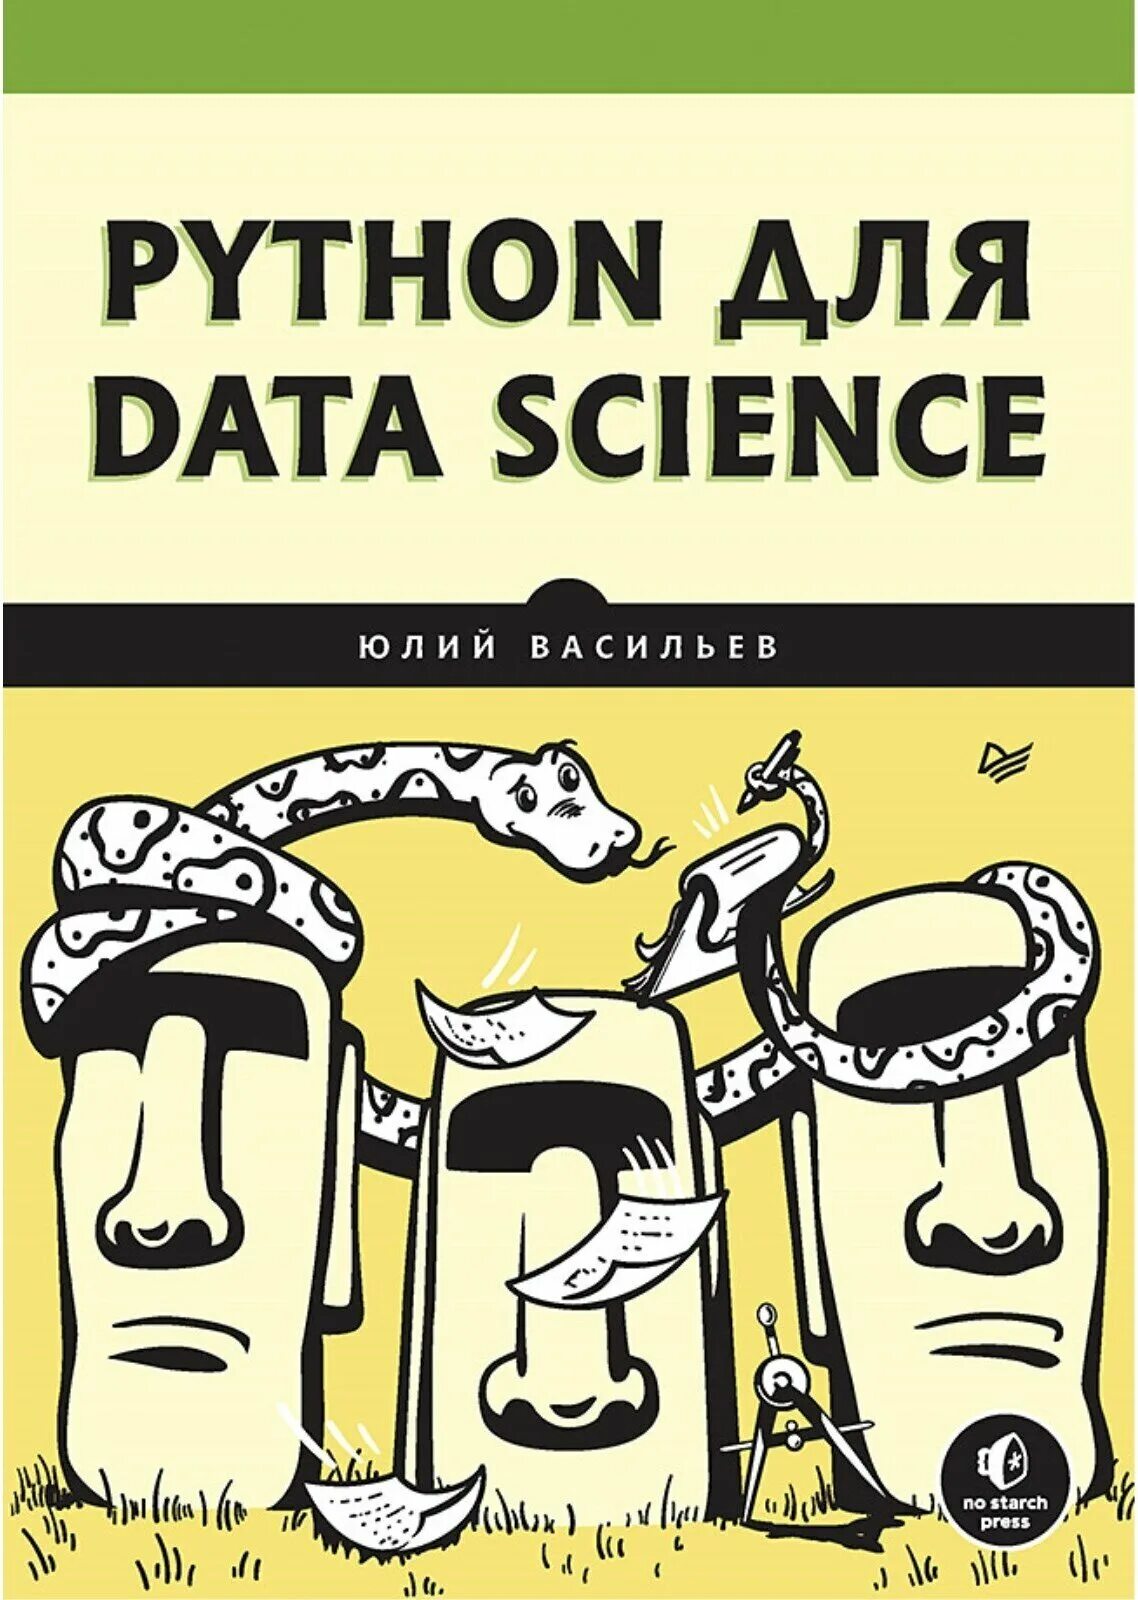 Книга питон. Книги по Python. Васильев а.н Python. Обложки для сообществ pdf. Python купить книгу